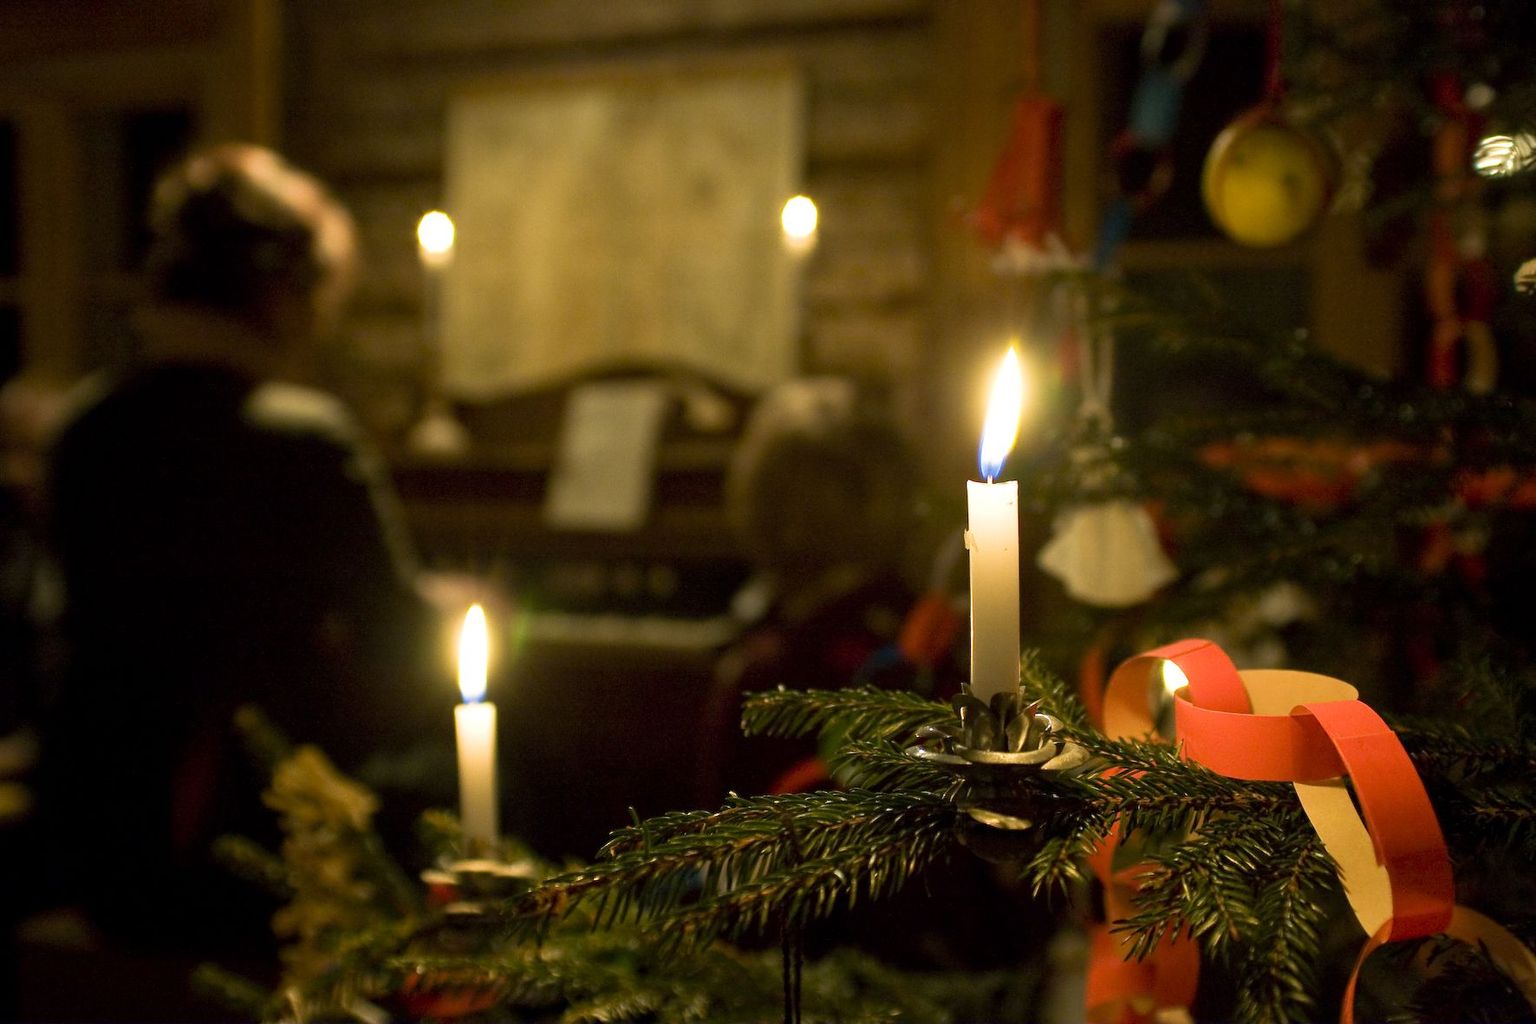 Sel nädalavahetusel Rocca al Mare vabaõhumuuseumis jõuluküla "Jõulud kodus, jõulud võõrsil".